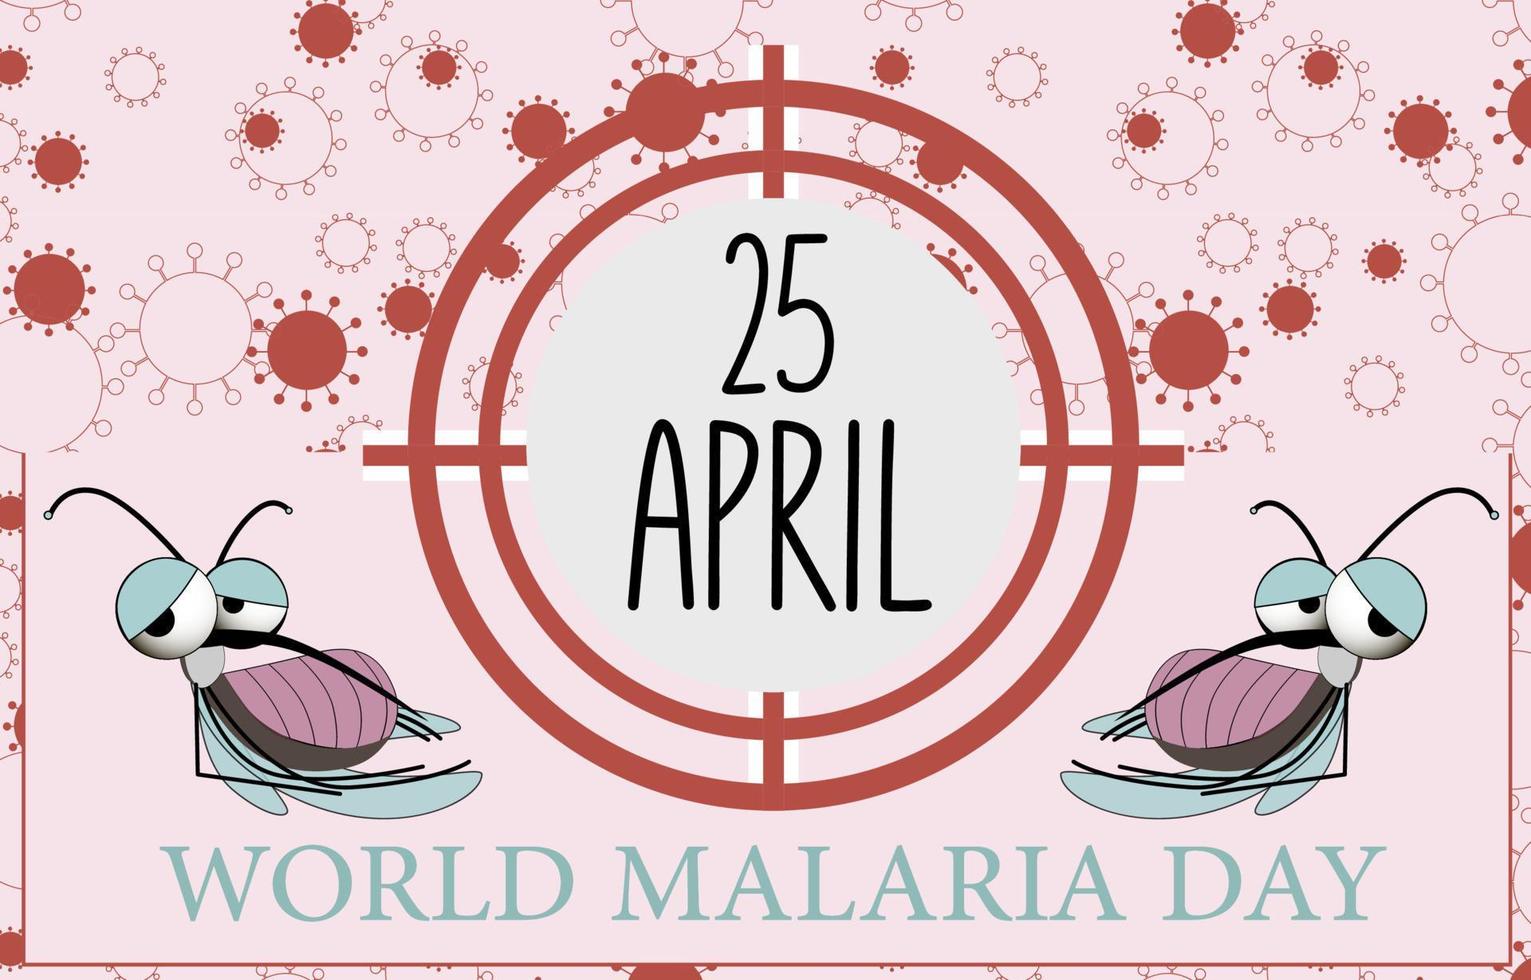 värld malaria dag vektor, illustration av malaria, och de värld för design värld malaria dag.vektor baner och affisch design. vektor